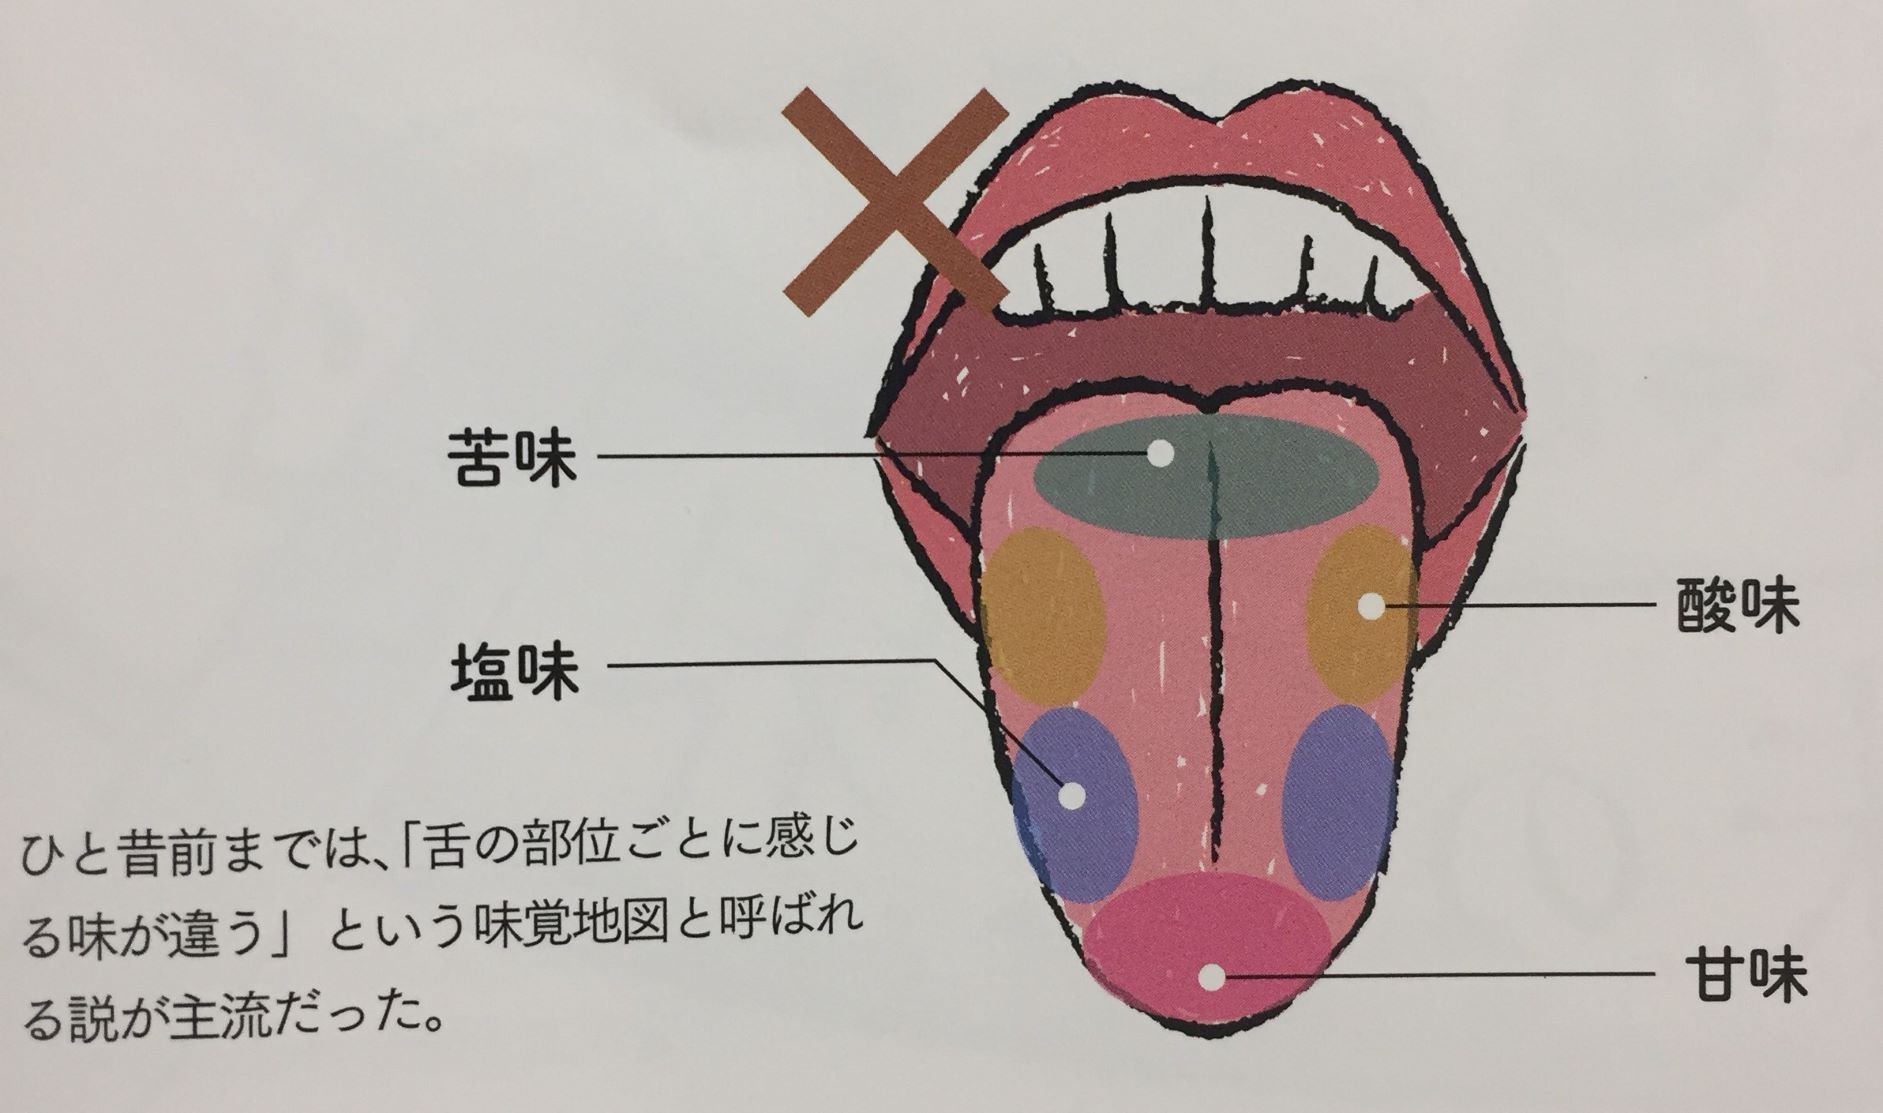 唇腭部的生理解剖特点之腭的解剖（二） - 知乎